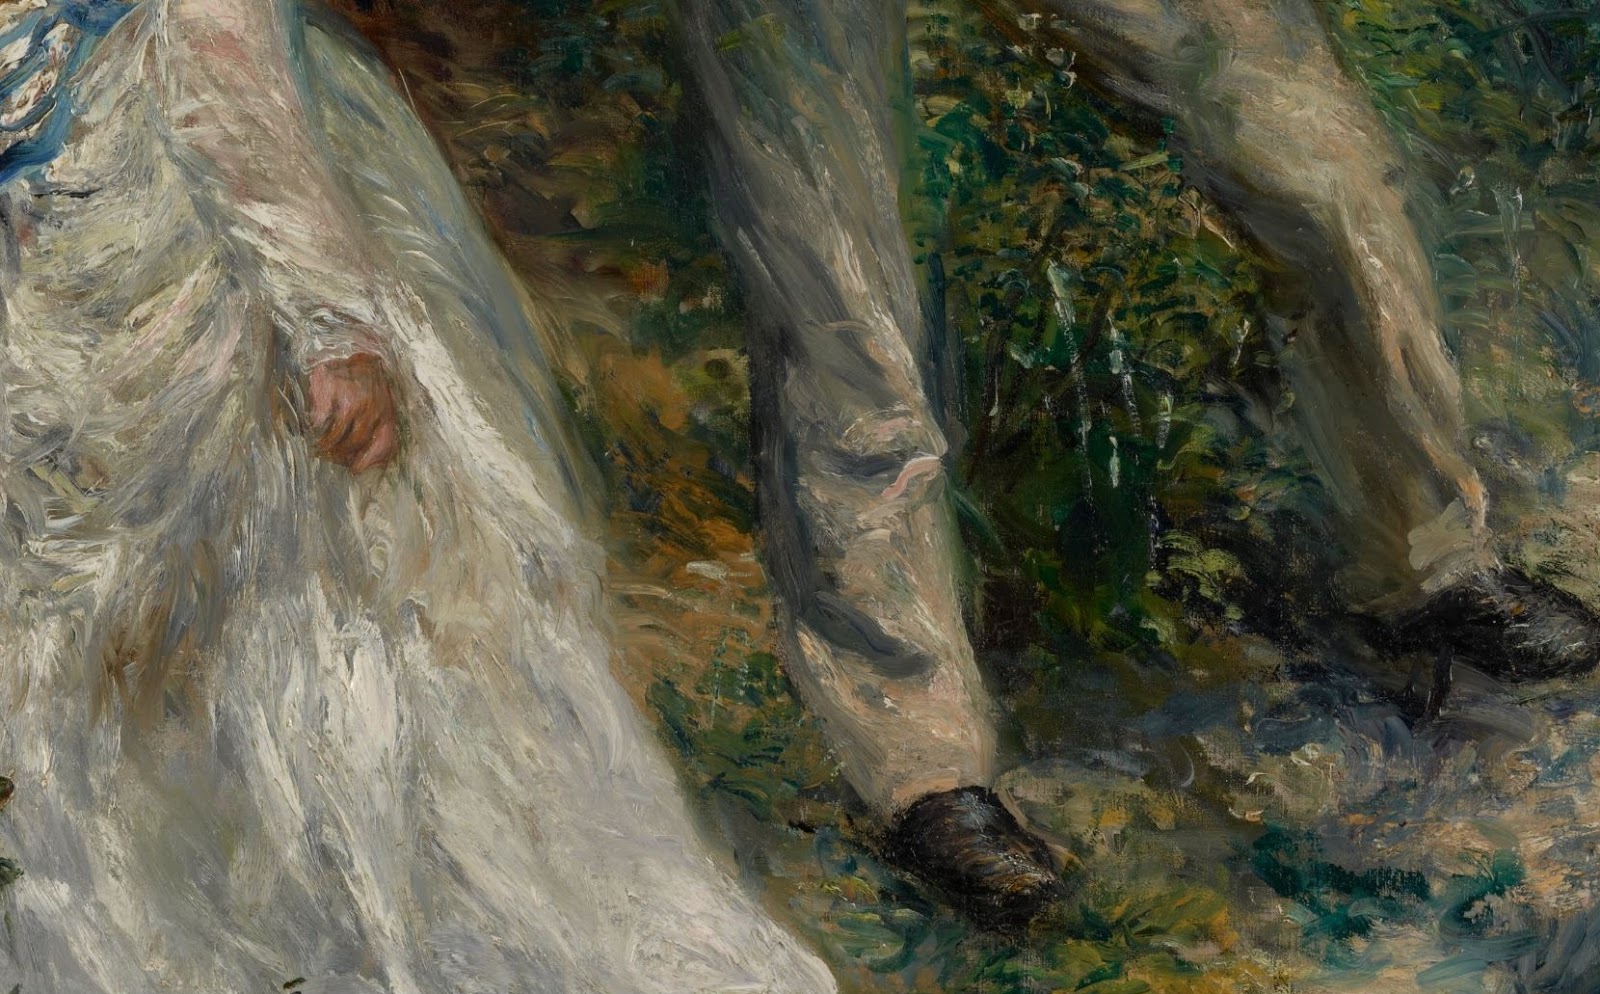 Pierre+Auguste+Renoir-1841-1-19 (274).JPG